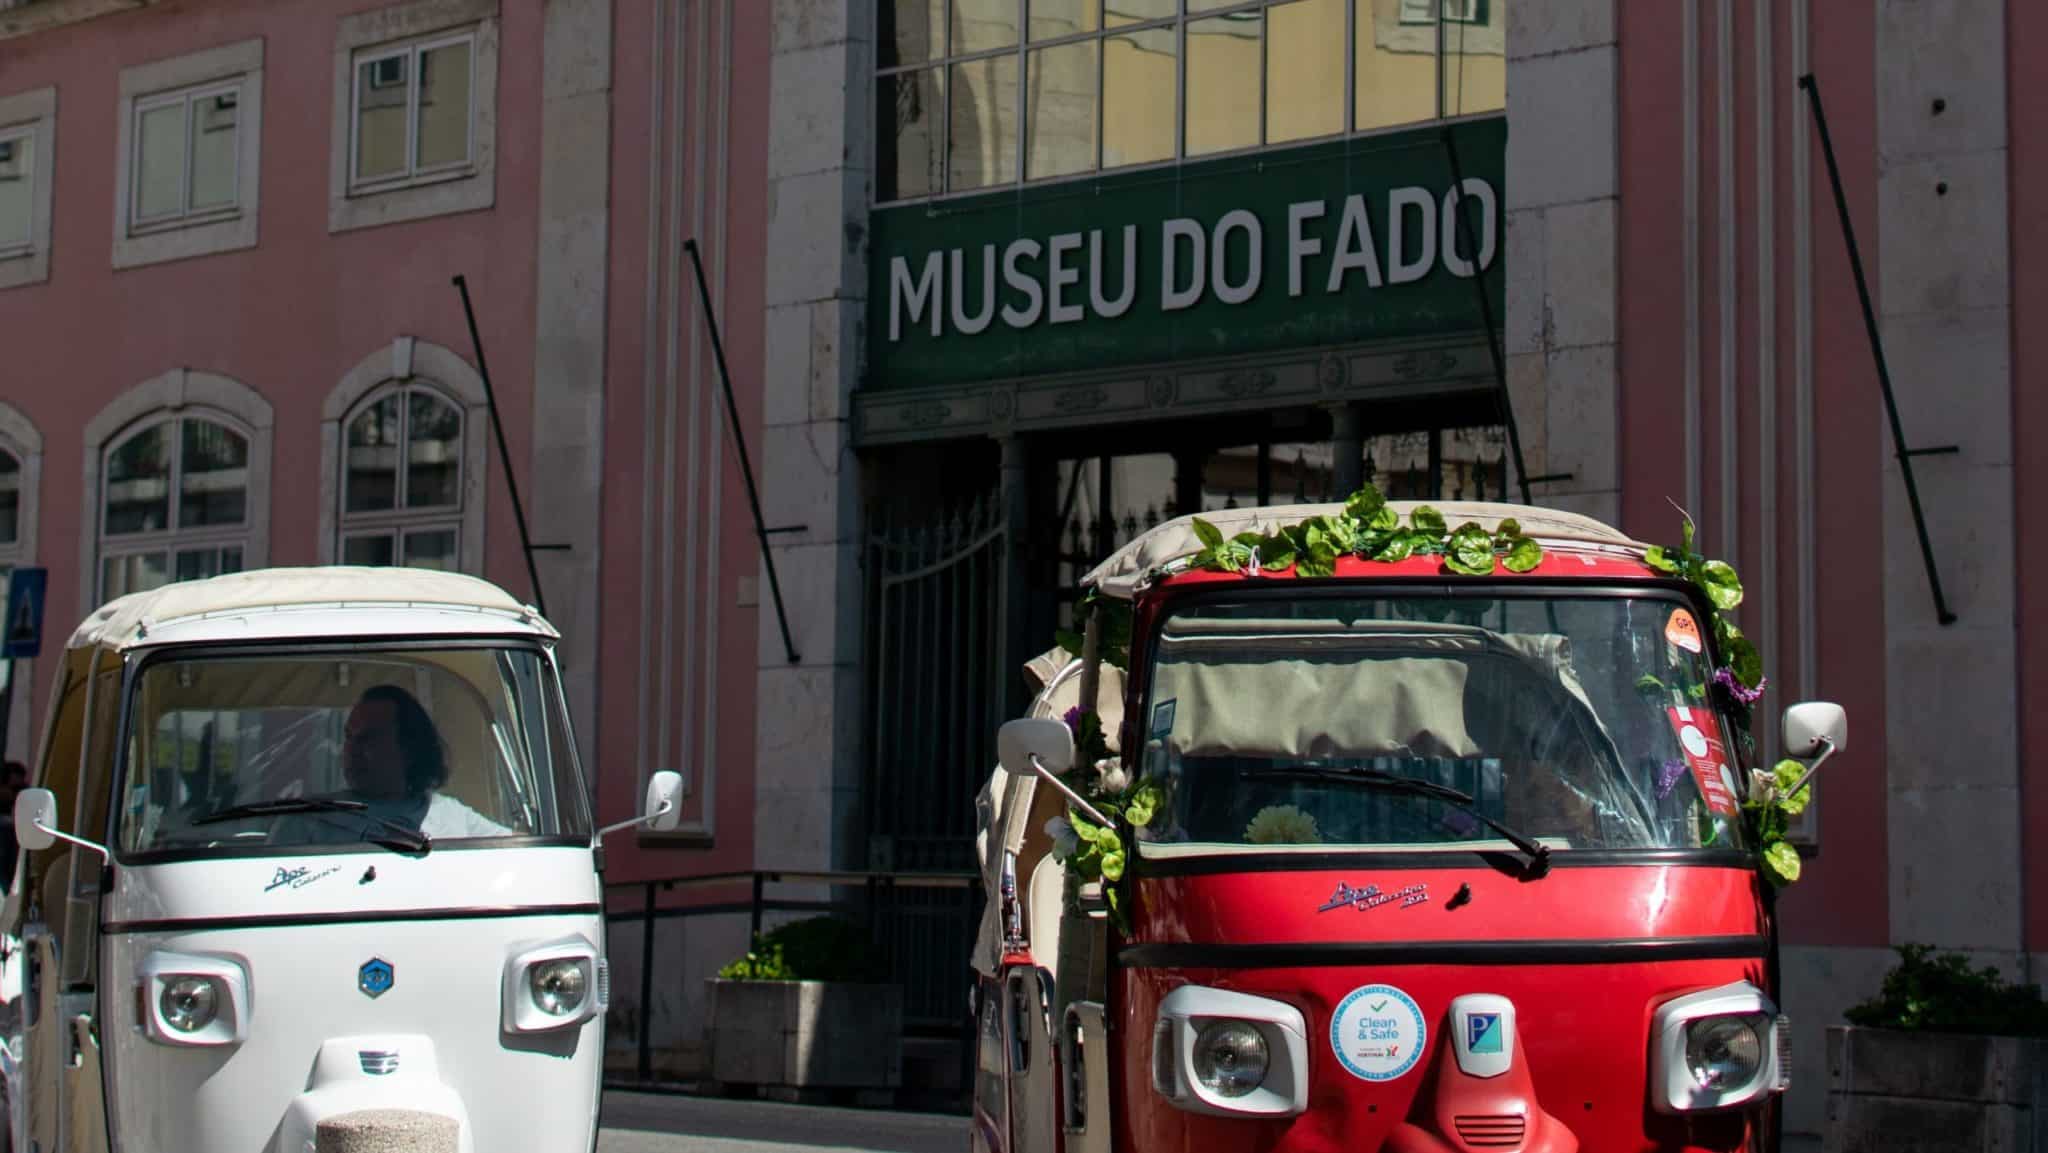 lissabon museu do fado edited scaled